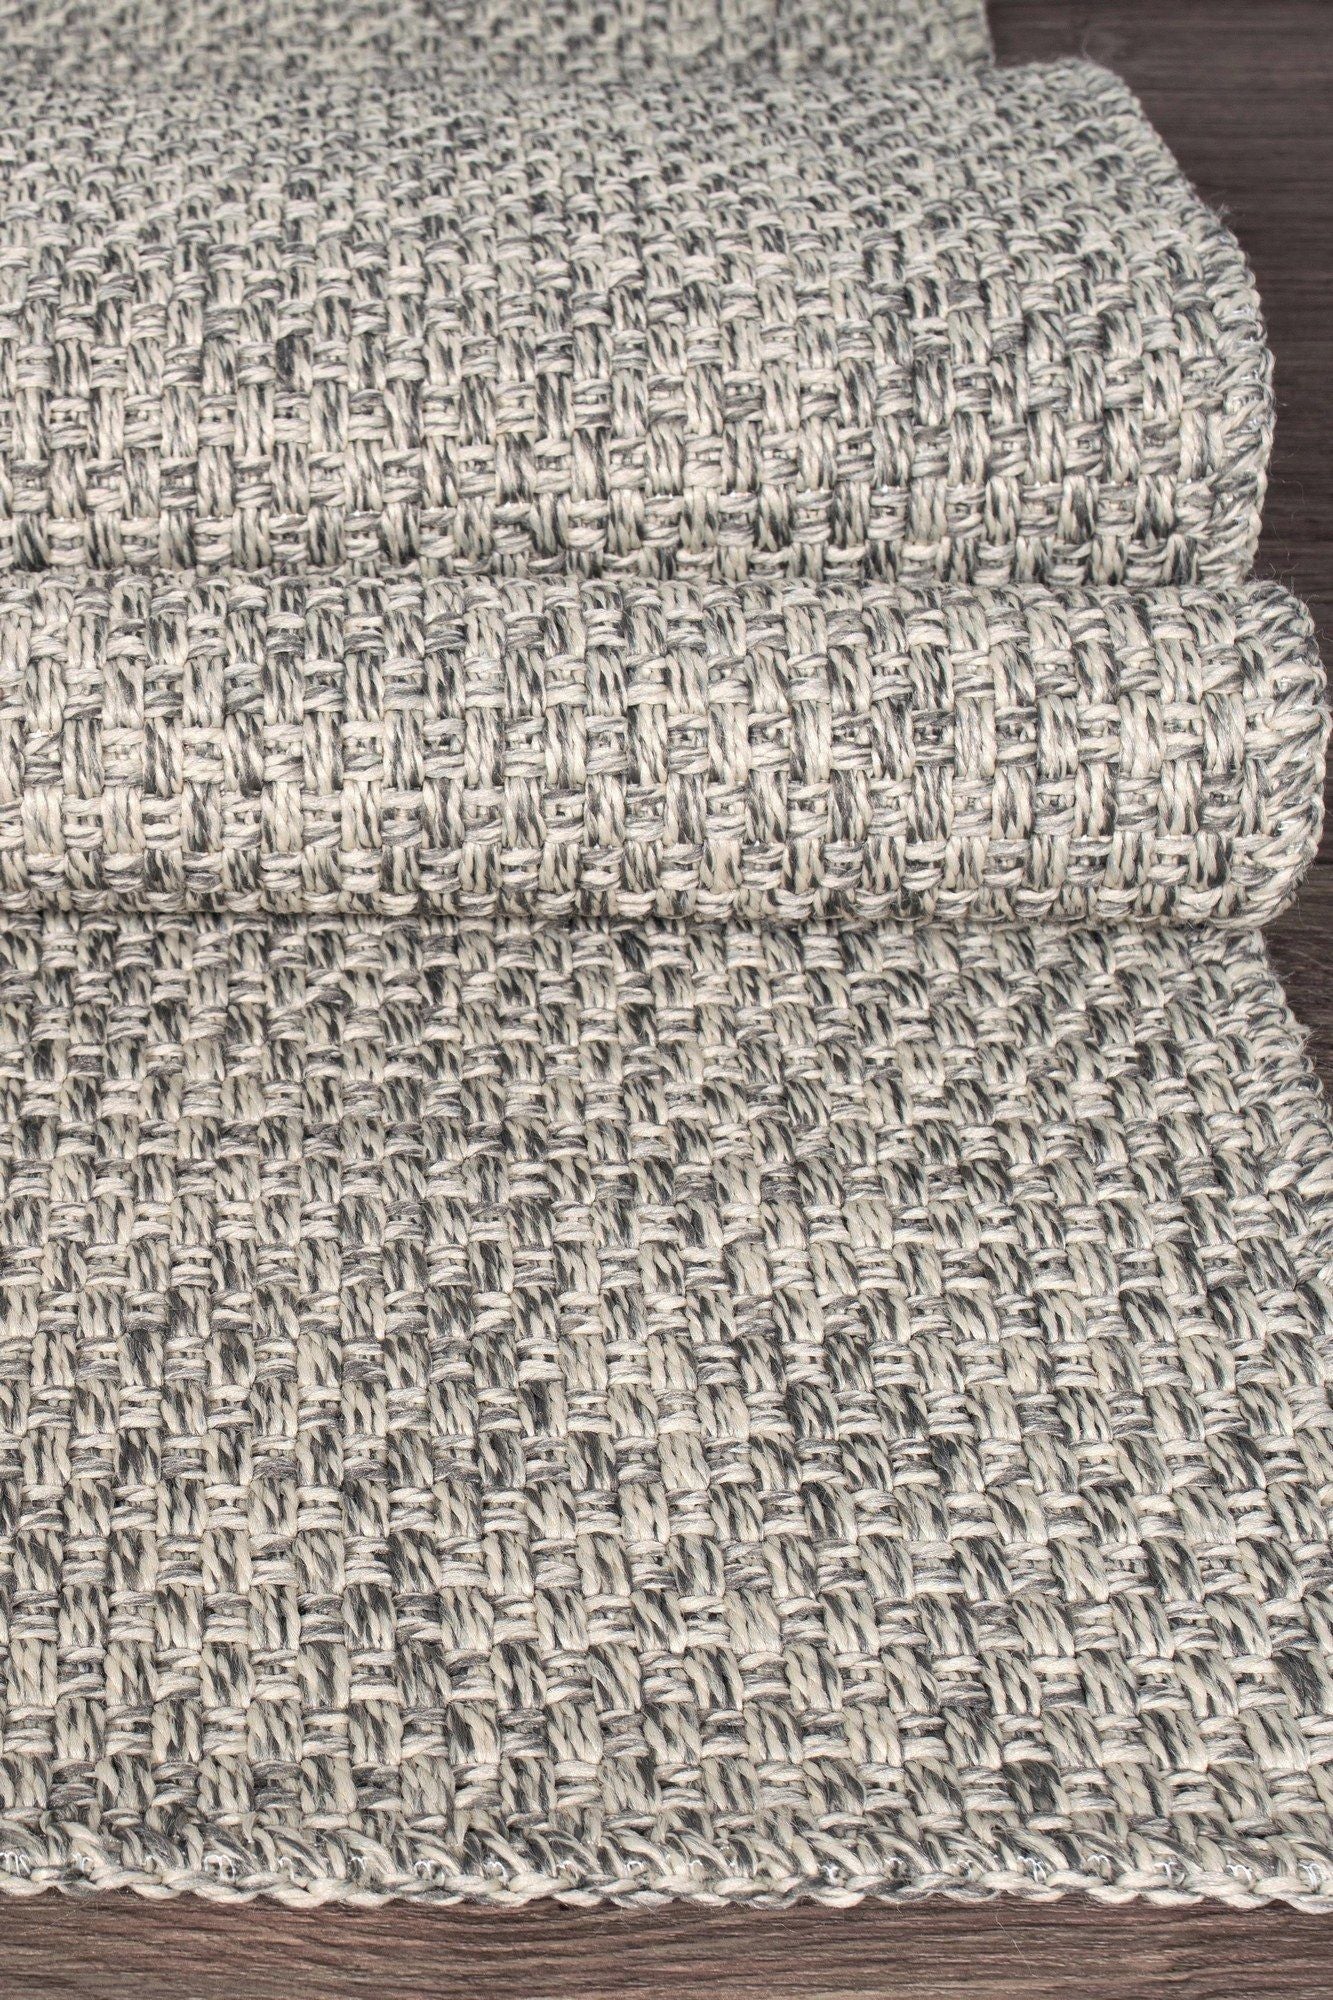 Rusticana 3103 - Hall Carpet (80 x 250)